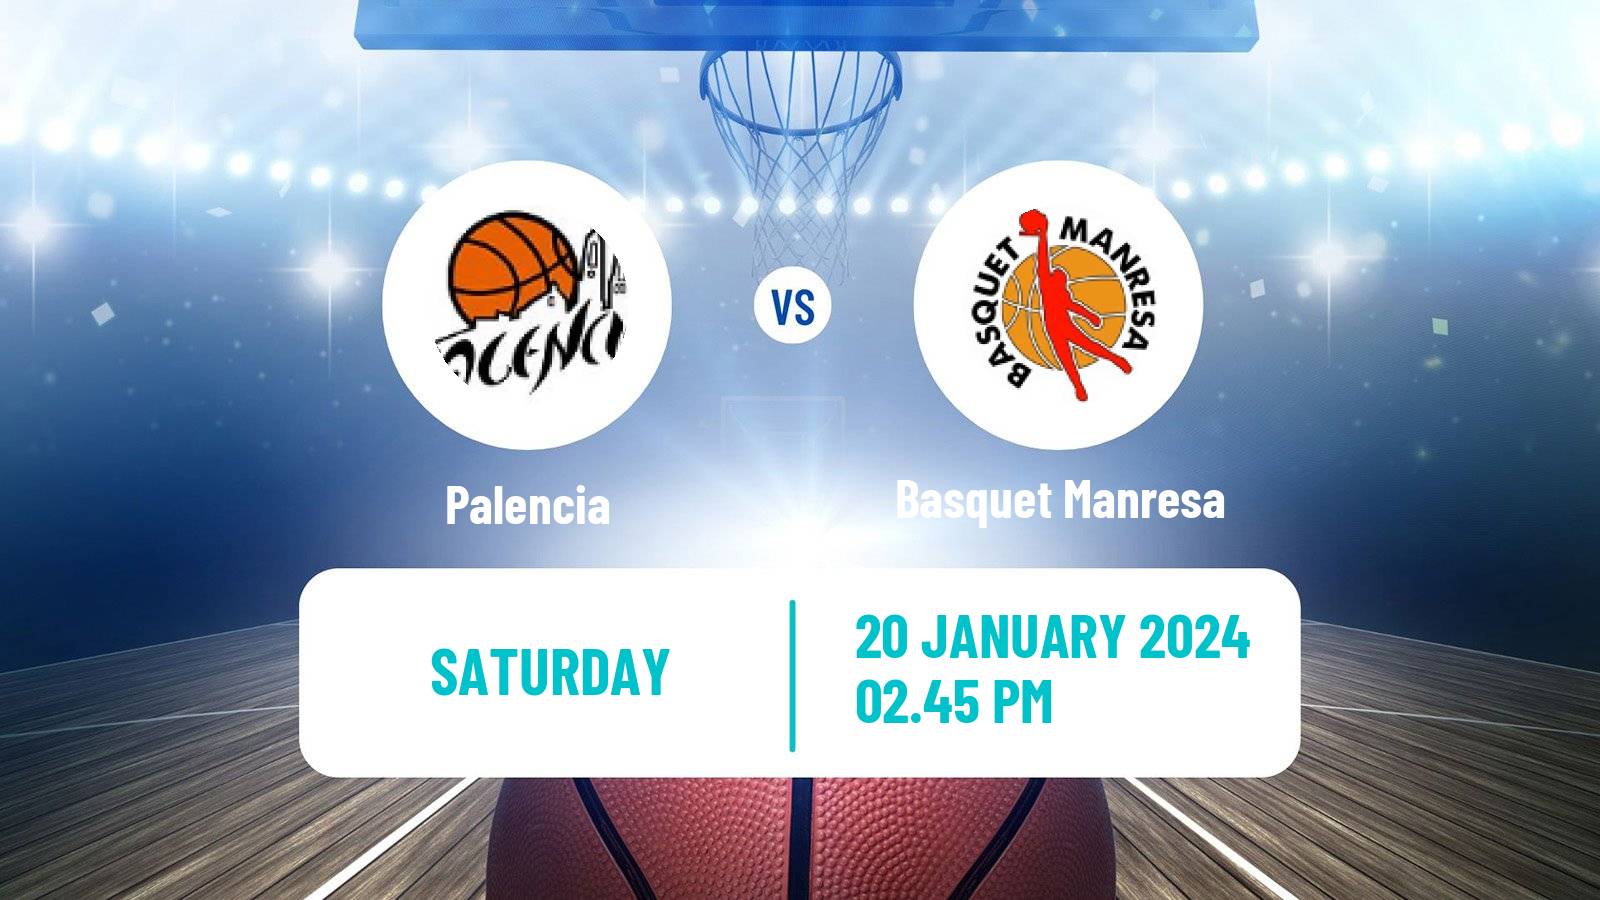 Basketball Spanish ACB League Palencia - Basquet Manresa